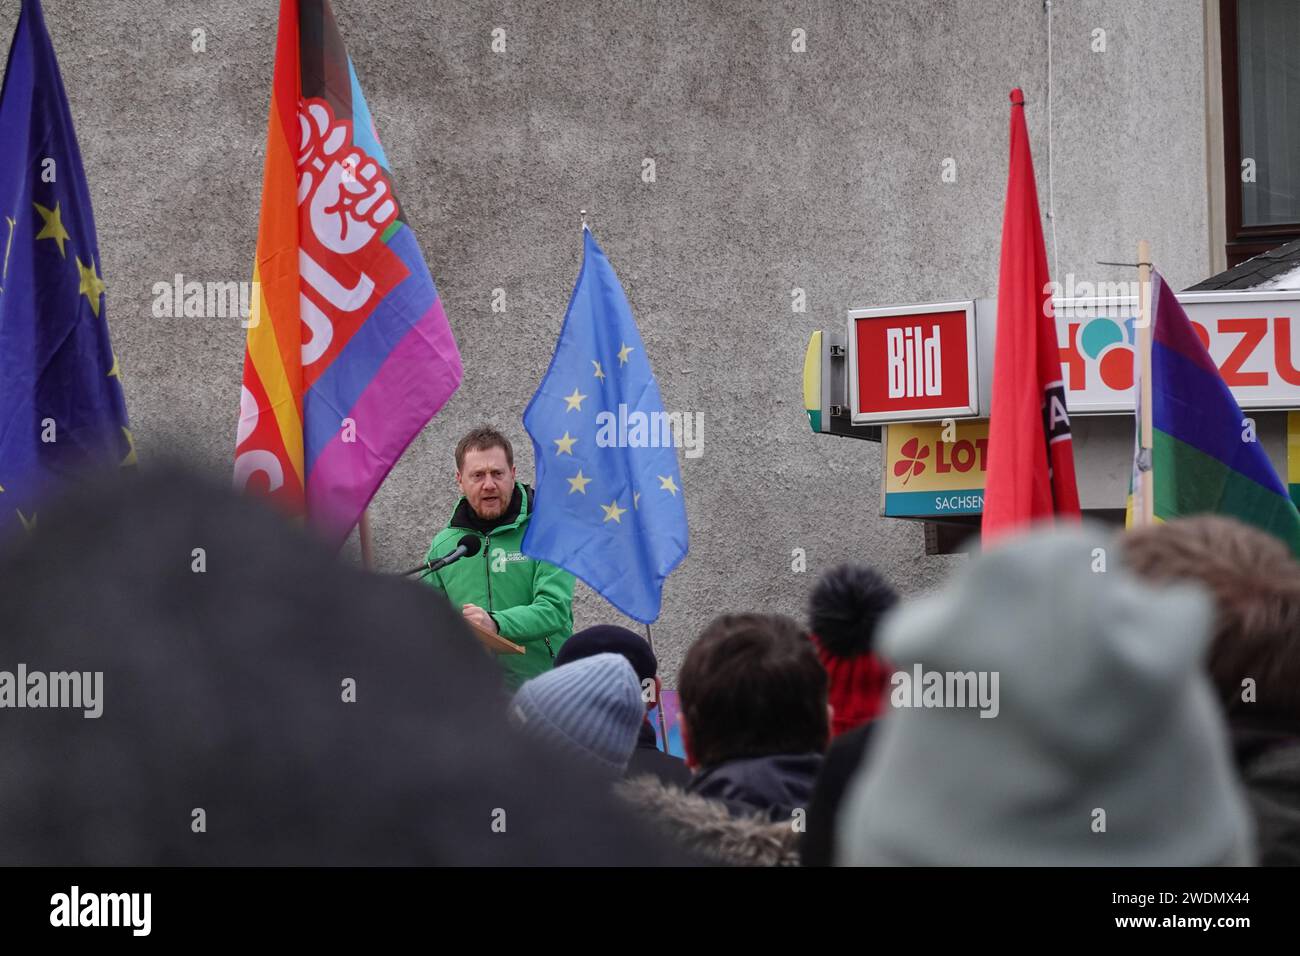 Der sächsische Ministerpräsident, Michael Kretschmer, redet auf einer Demonstration in Görlitz. Er trägt eine Grüne Jacke Stock Photo